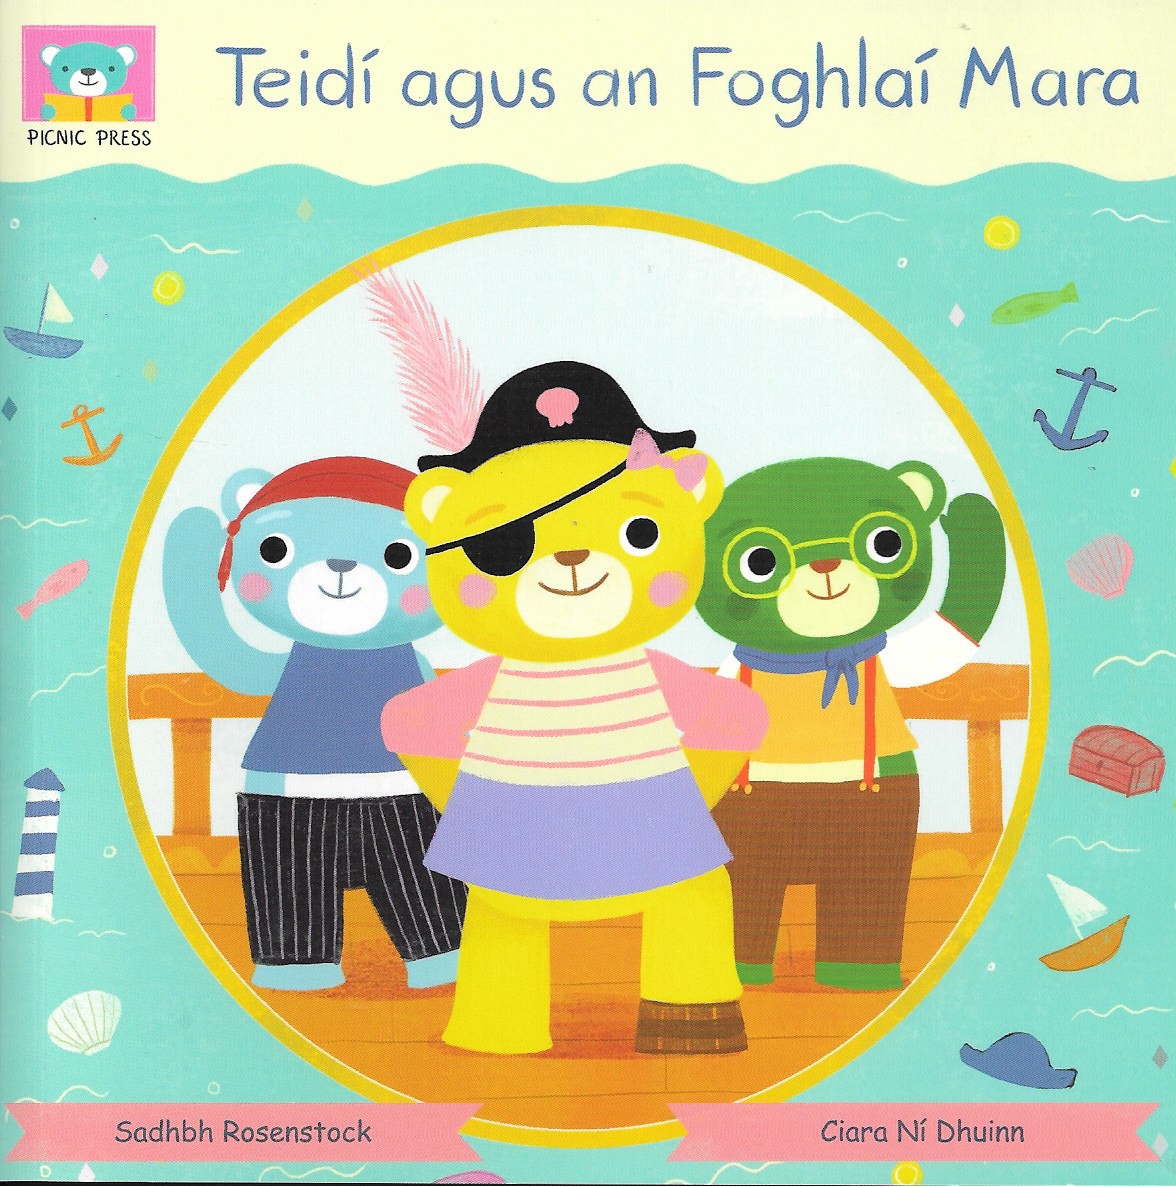 Teidí agus an Foghlaí Mara